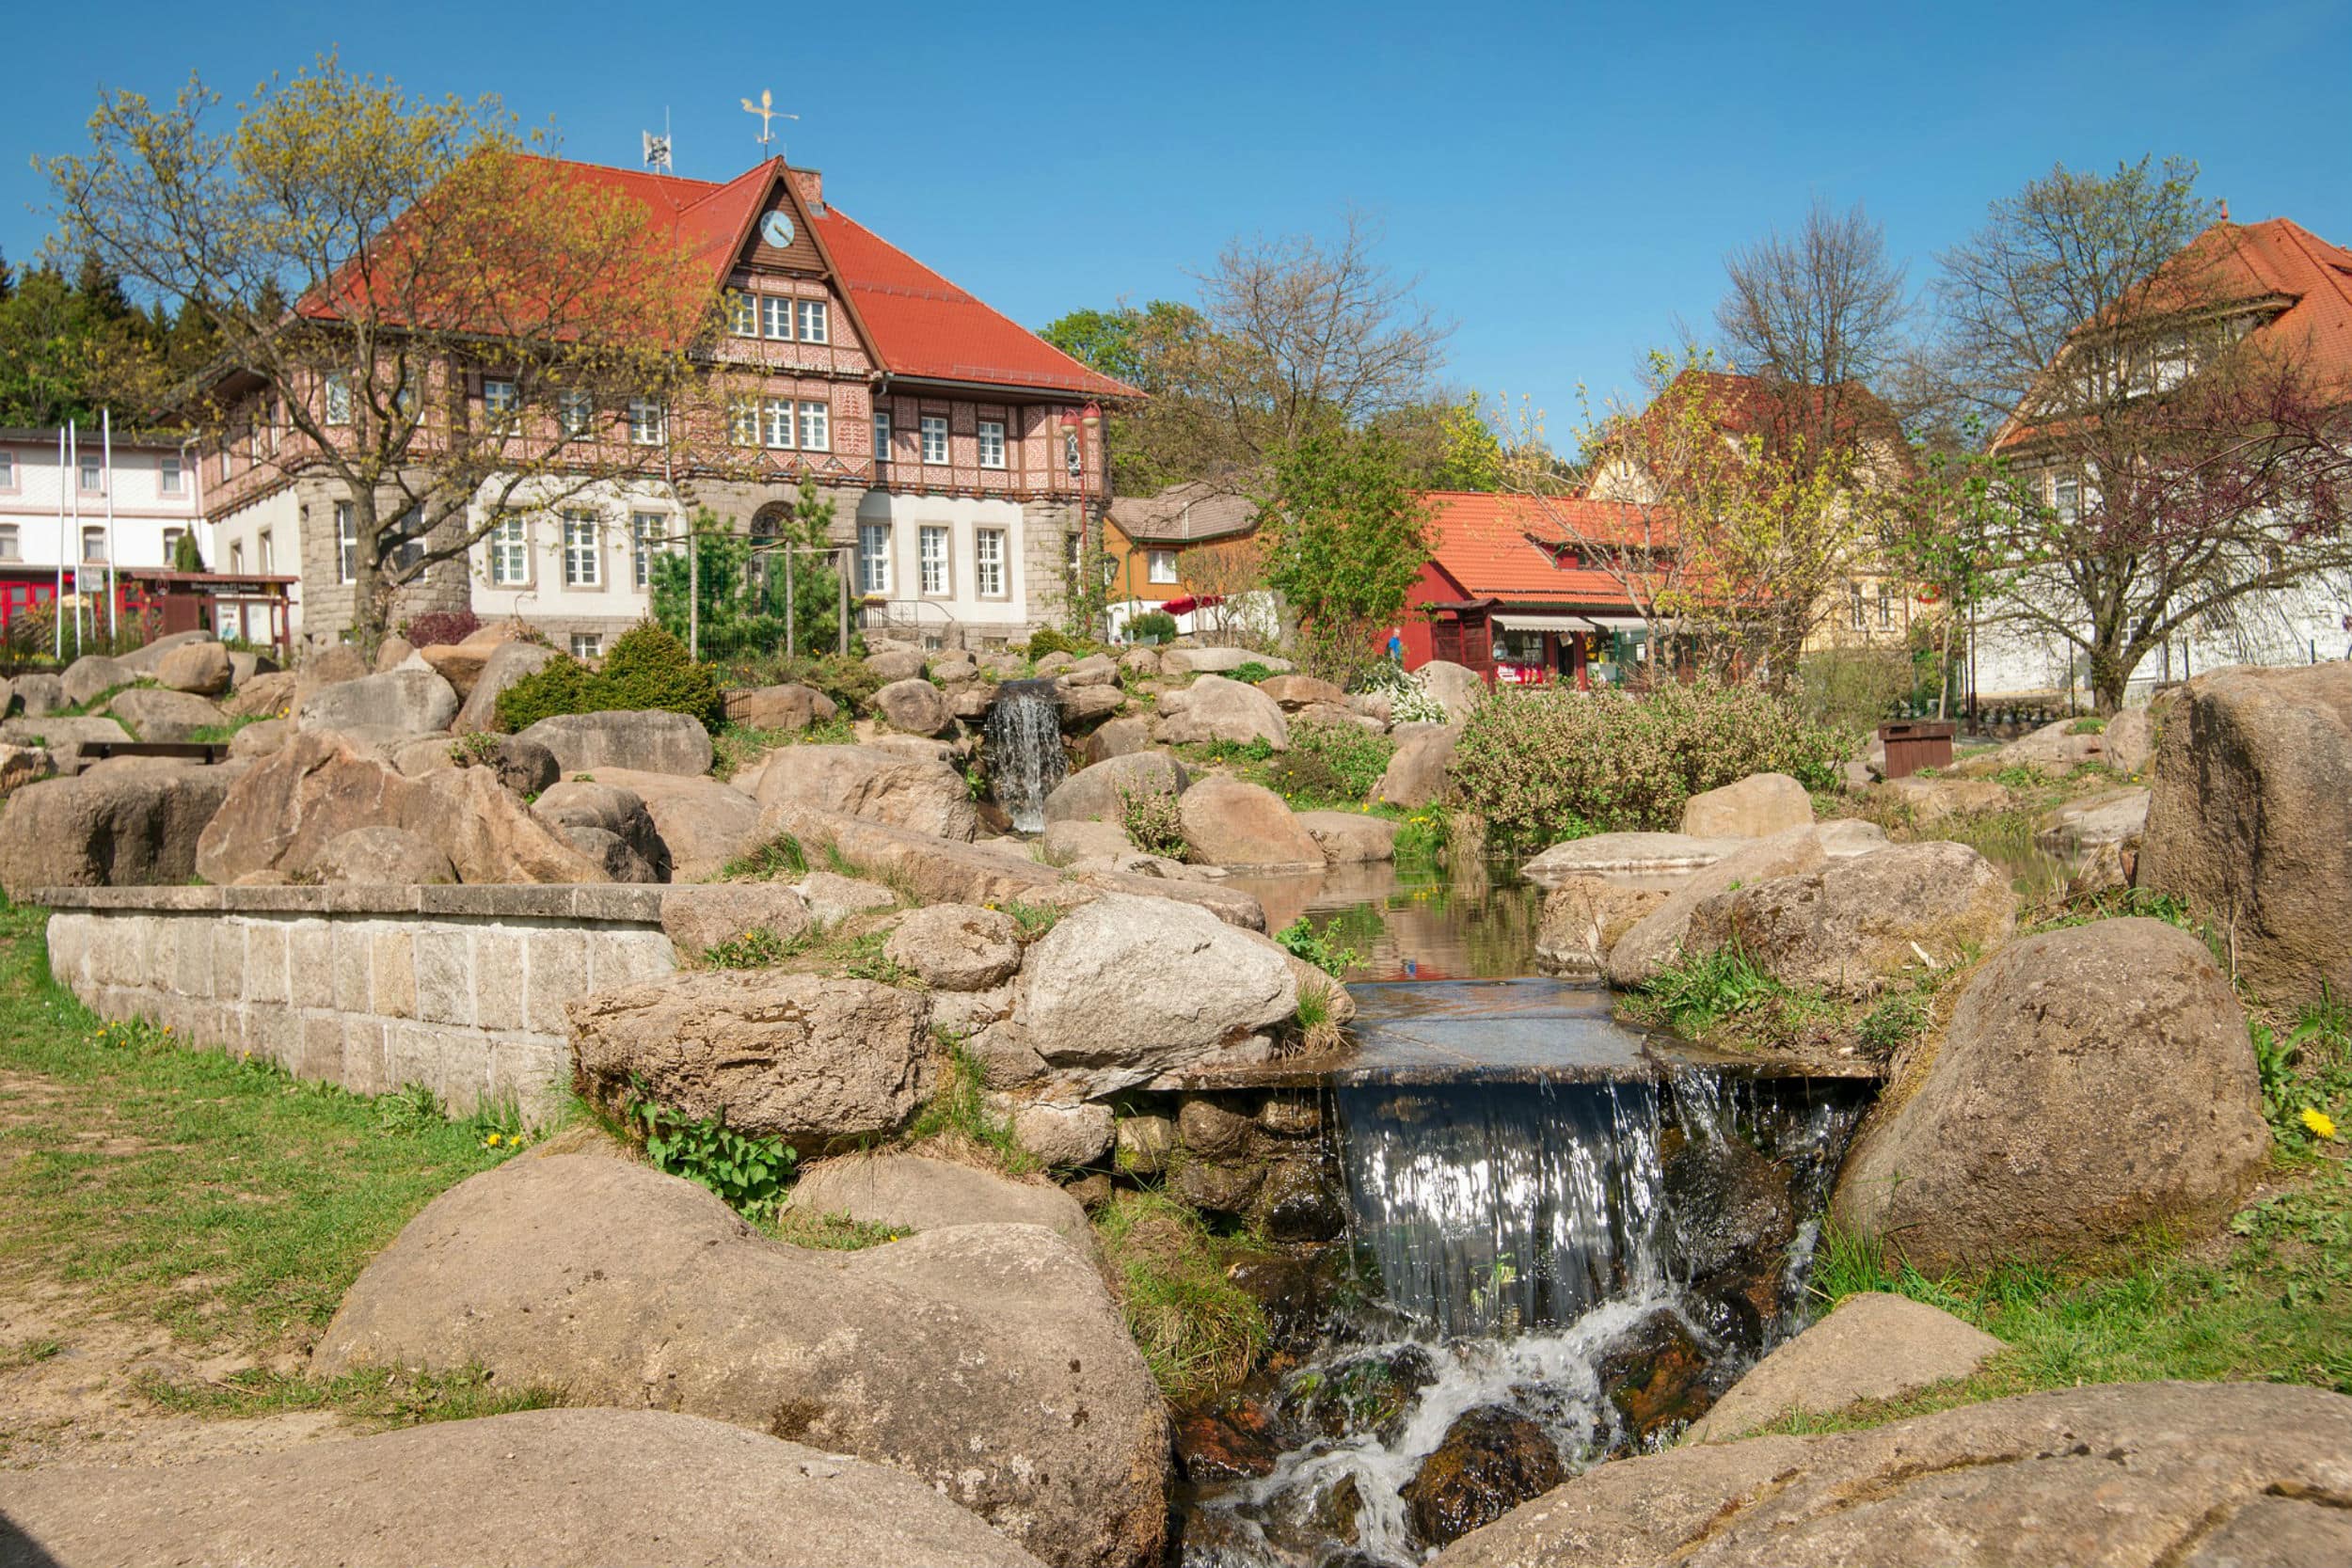 Ferienhaus im Harz mieten – Urlaub in unberührter Natur